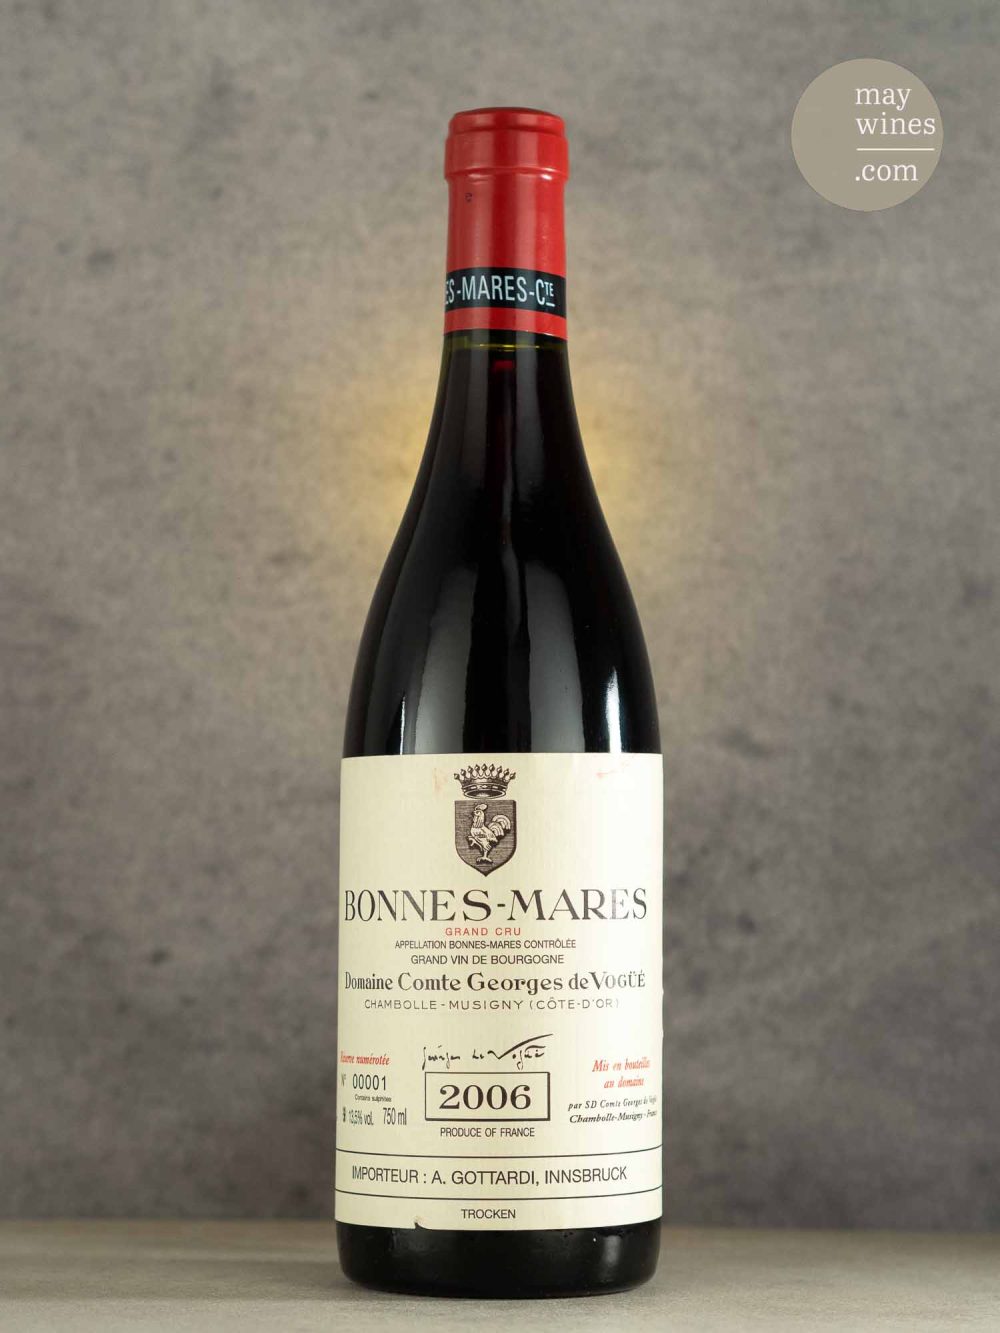 May Wines – Rotwein – 2006 Bonnes Mares Grand Cru - Domaine Comte Georges de Vogüé